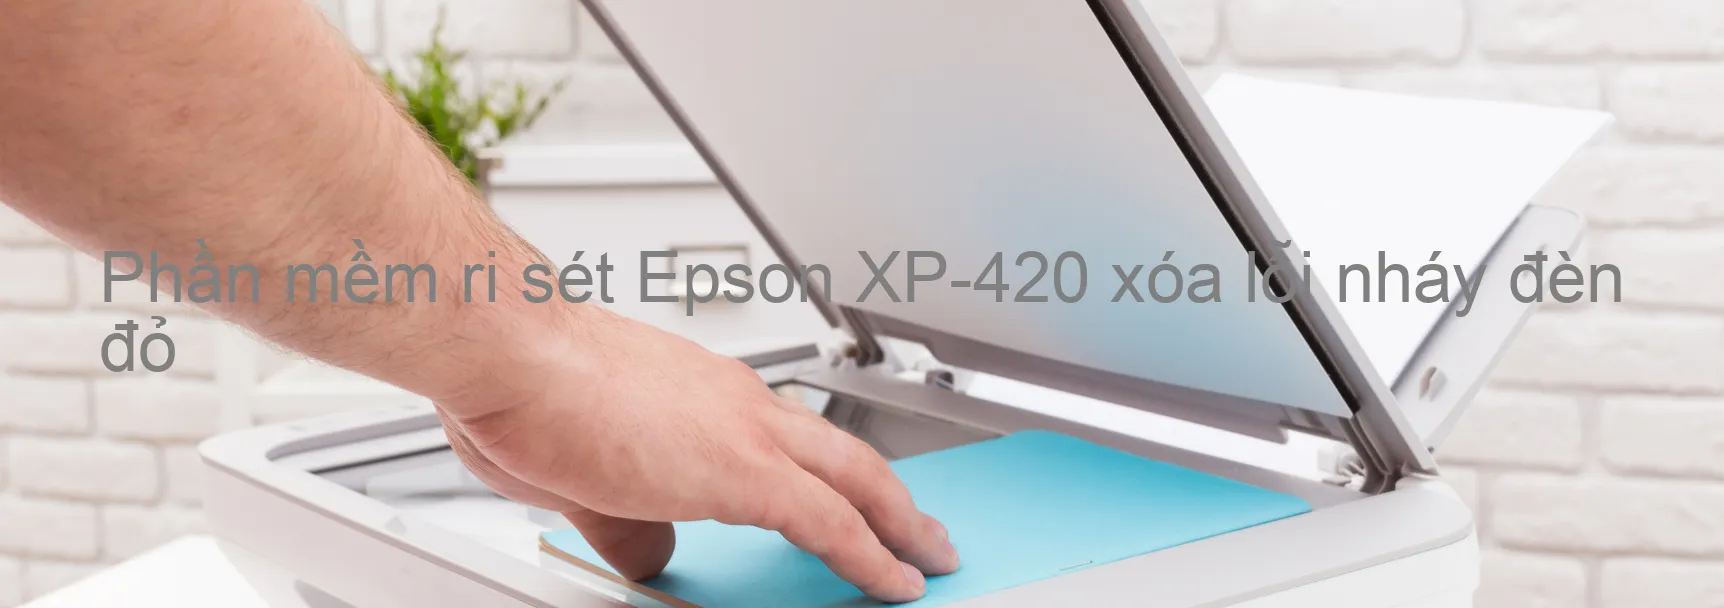 Phần mềm reset Epson XP-420 xóa lỗi nháy đèn đỏ